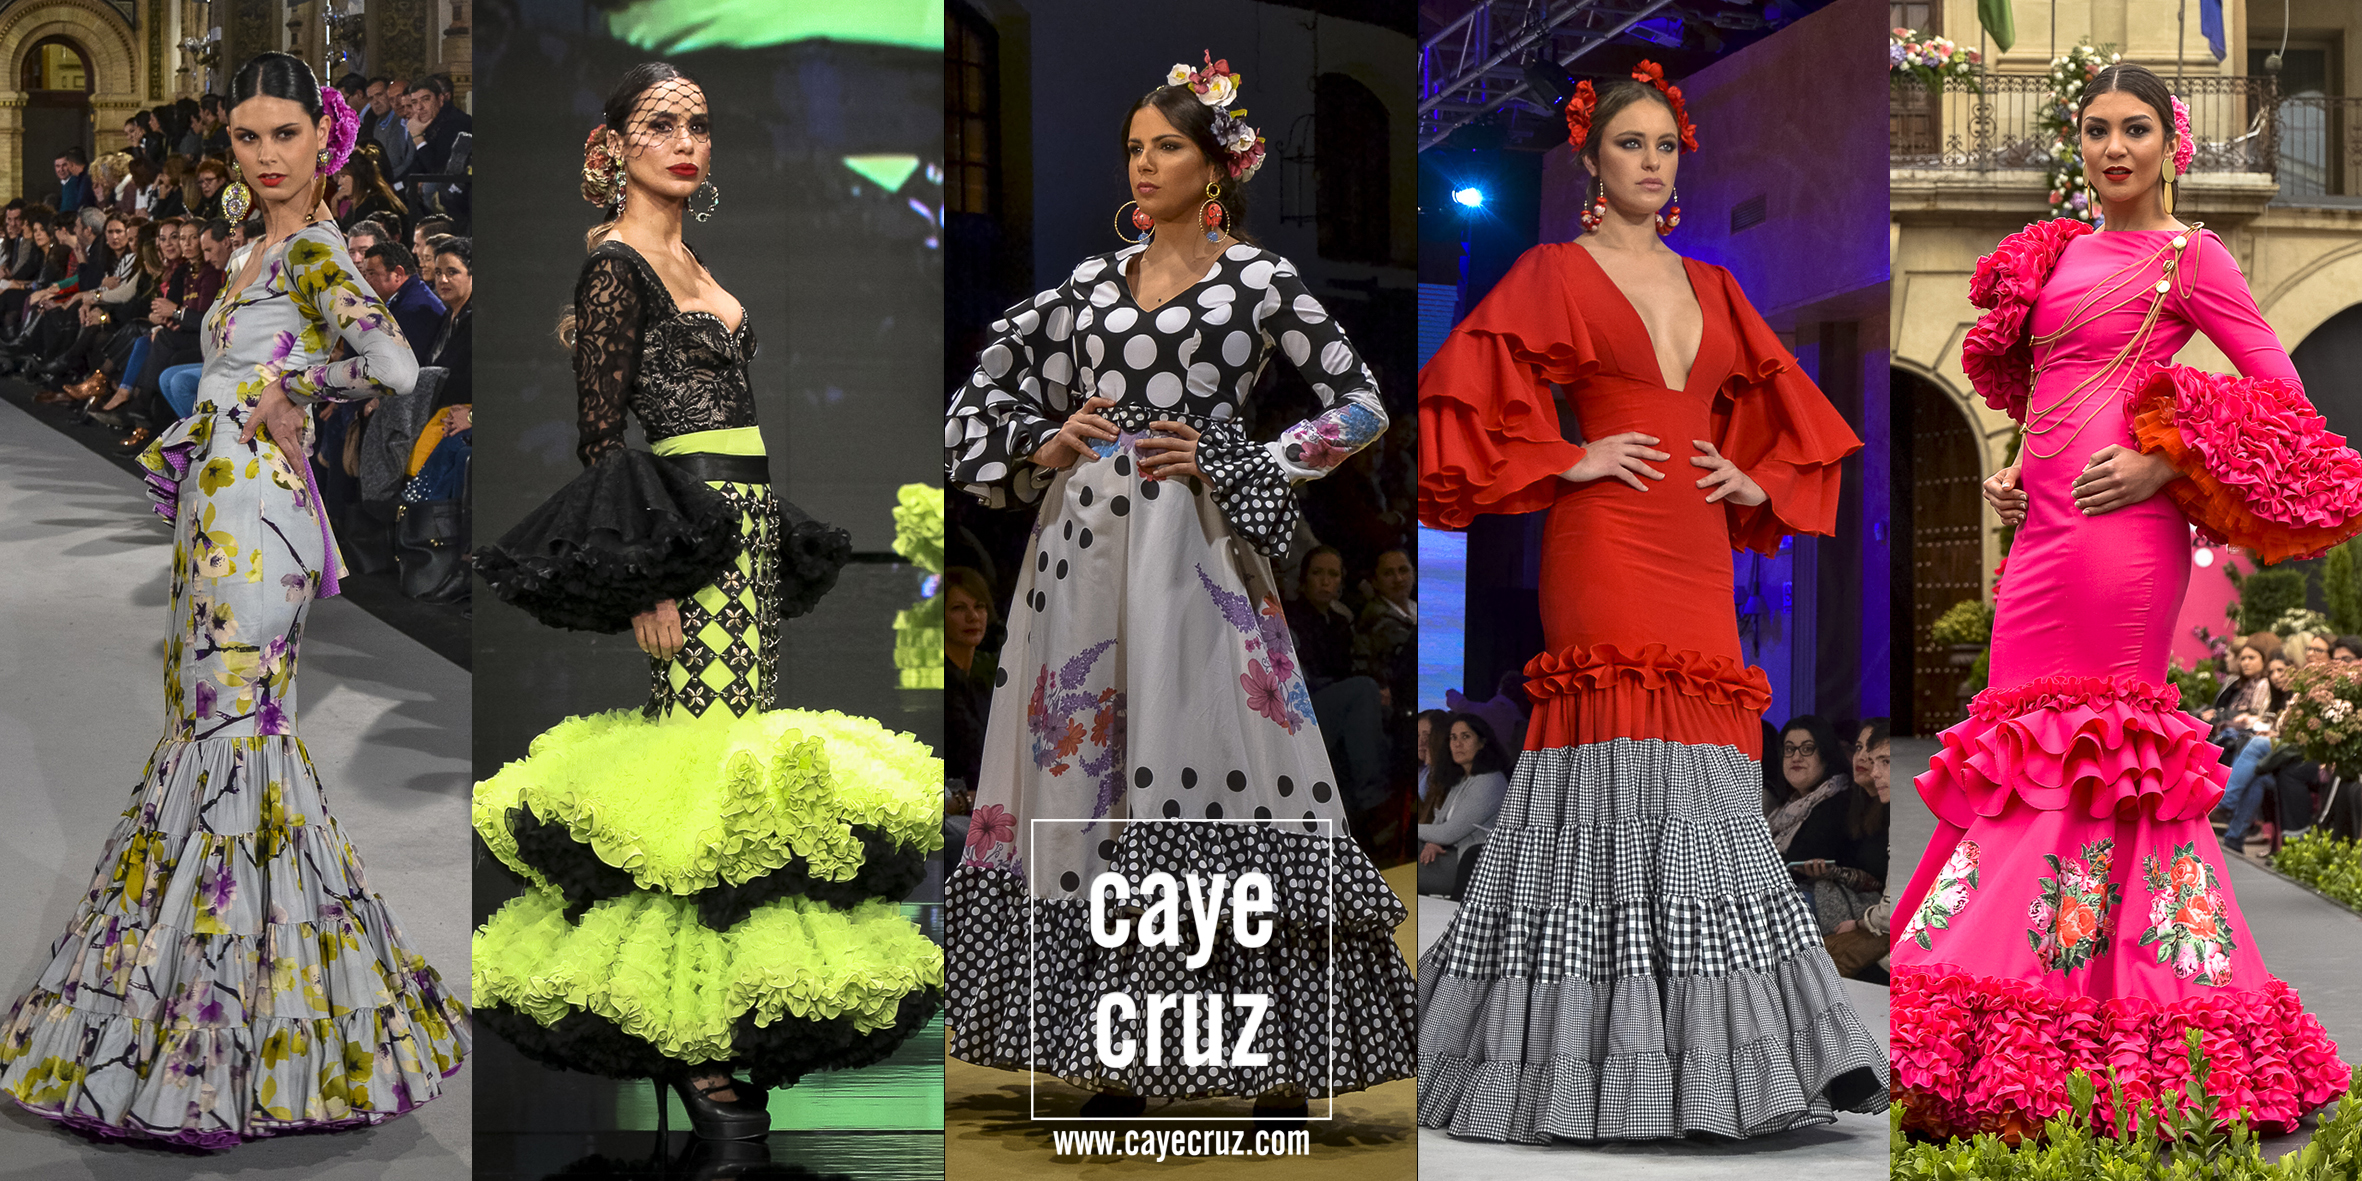 Moda 2019: Calendario de pasarelas - CayeCruz